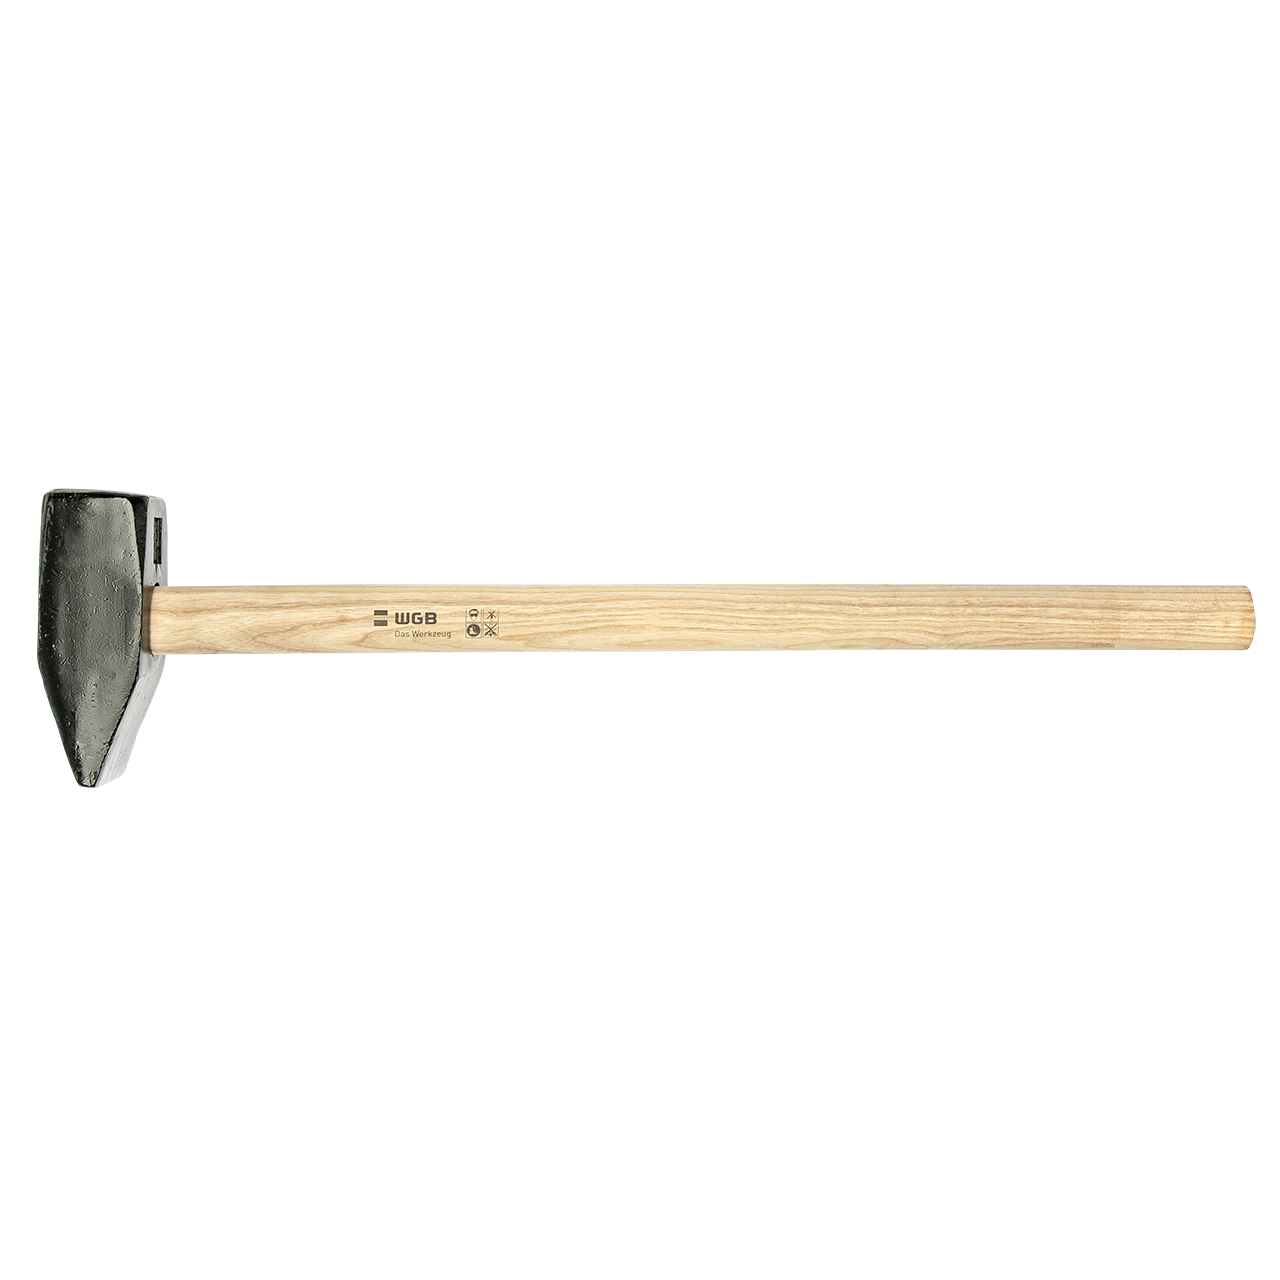 Sledge Hammer, DIN 1042